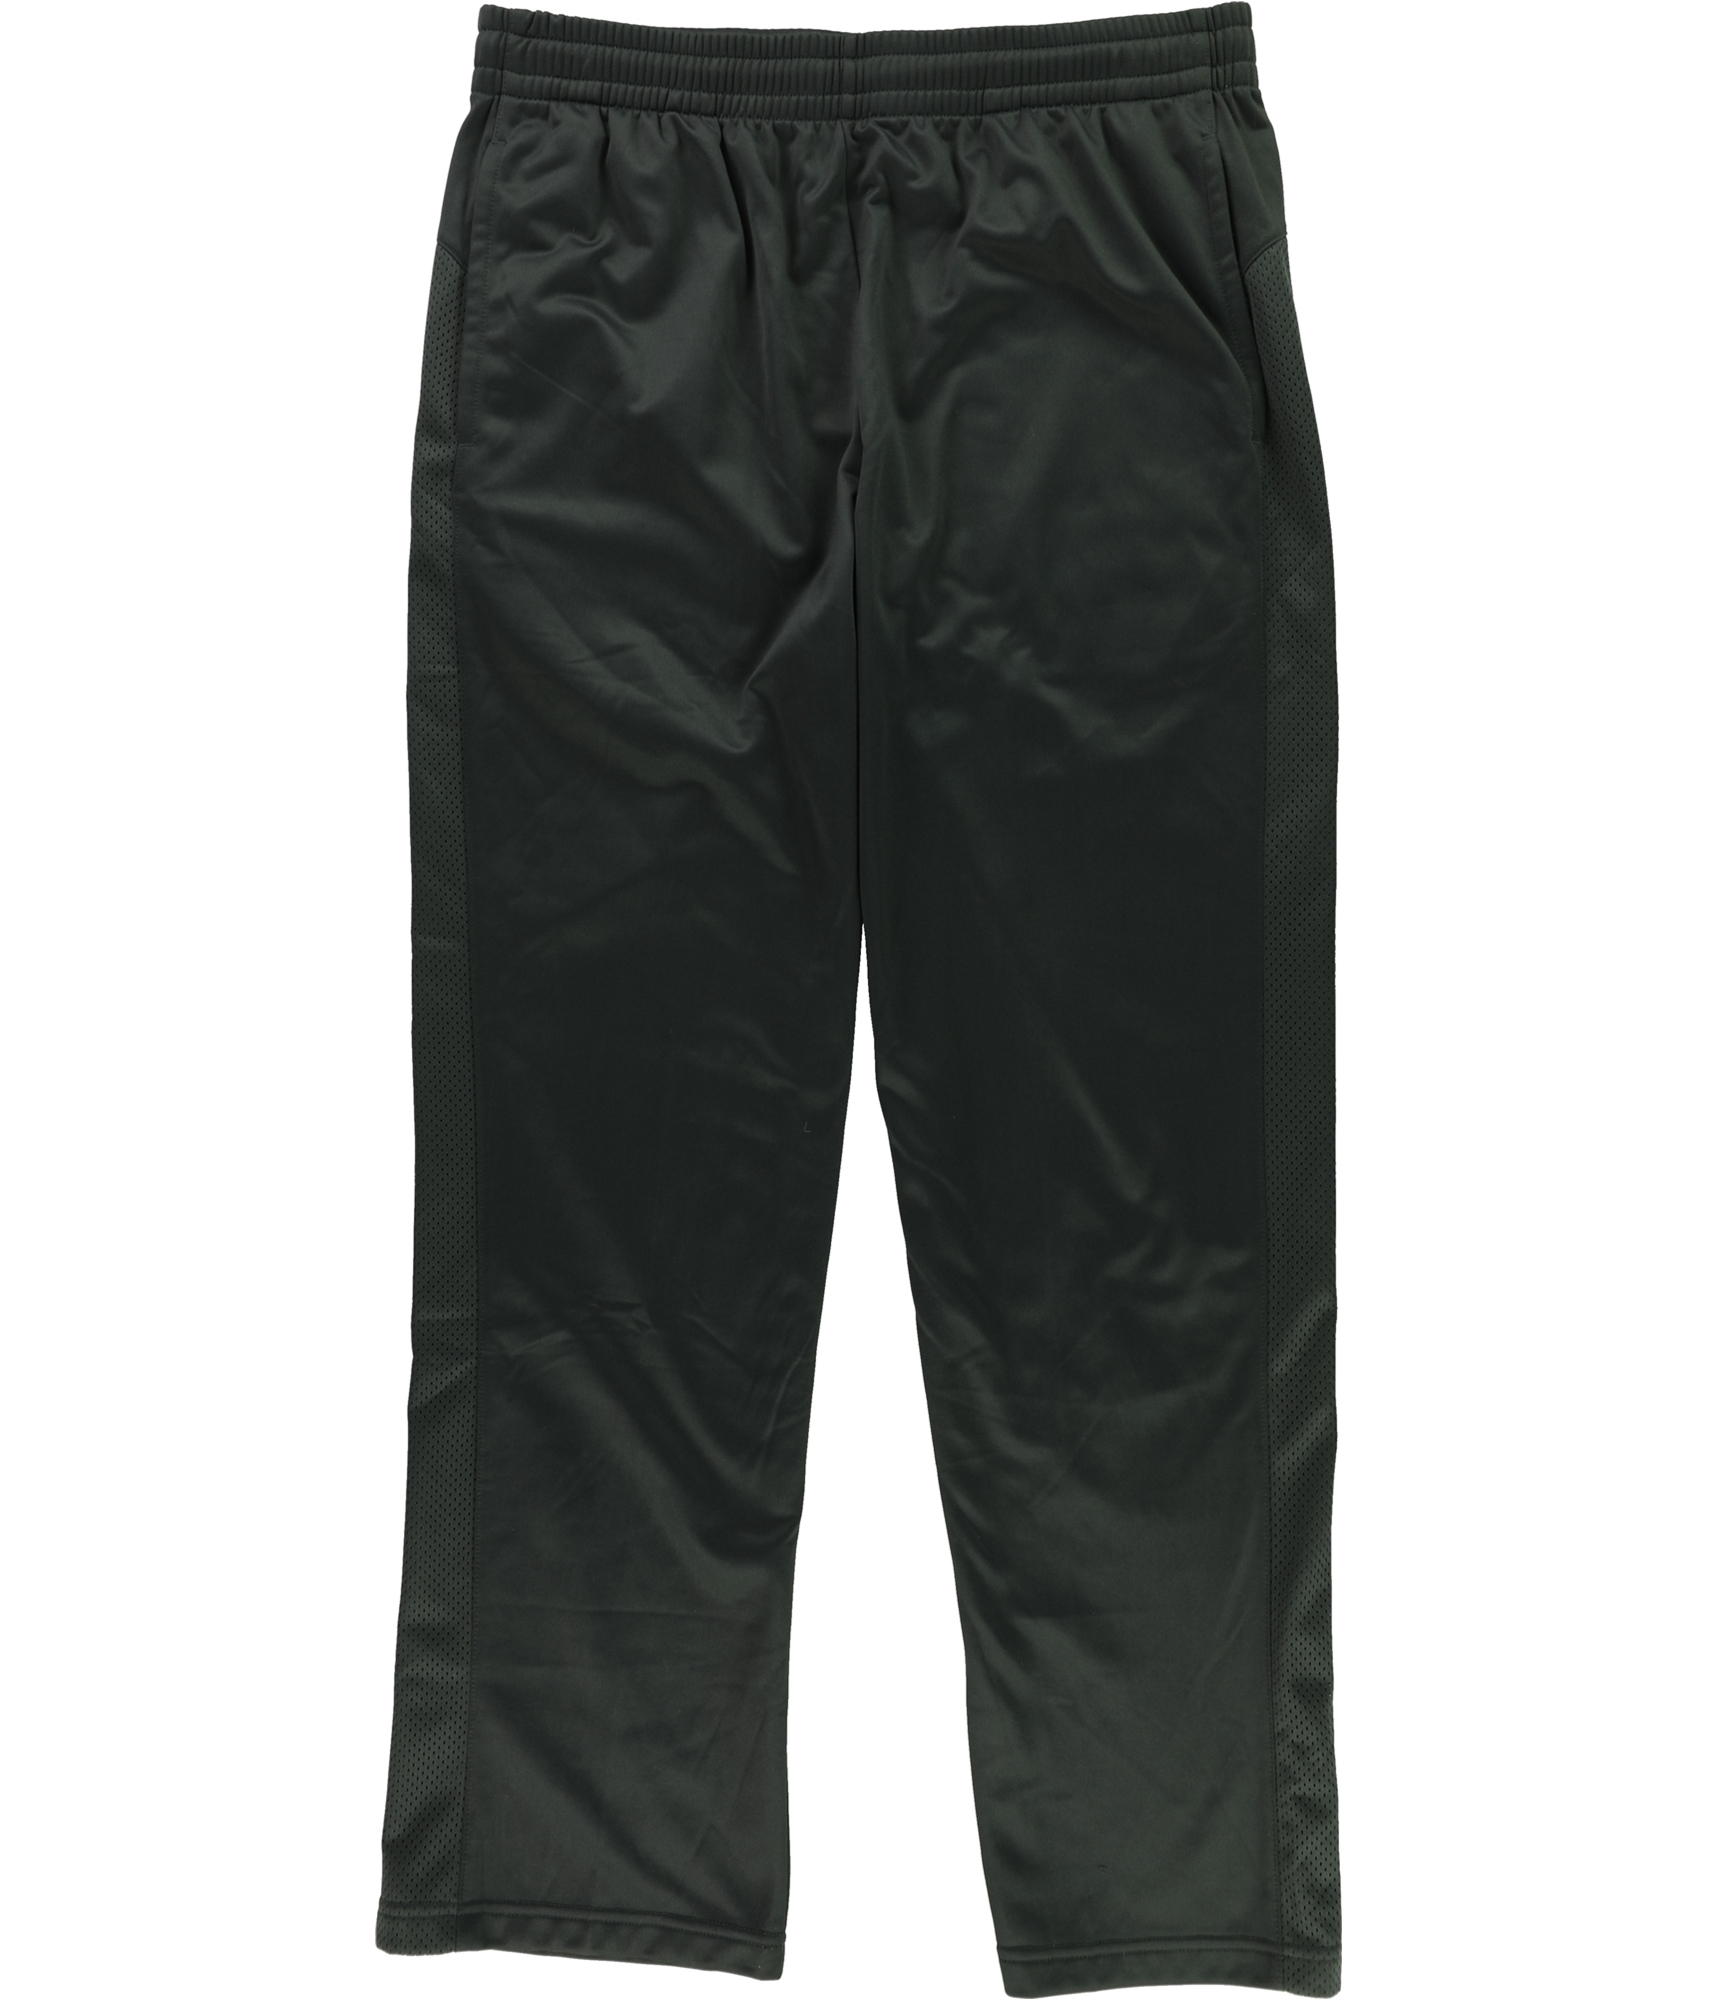 Boys Tek Gear Shorts - Size Medium (10 -12)